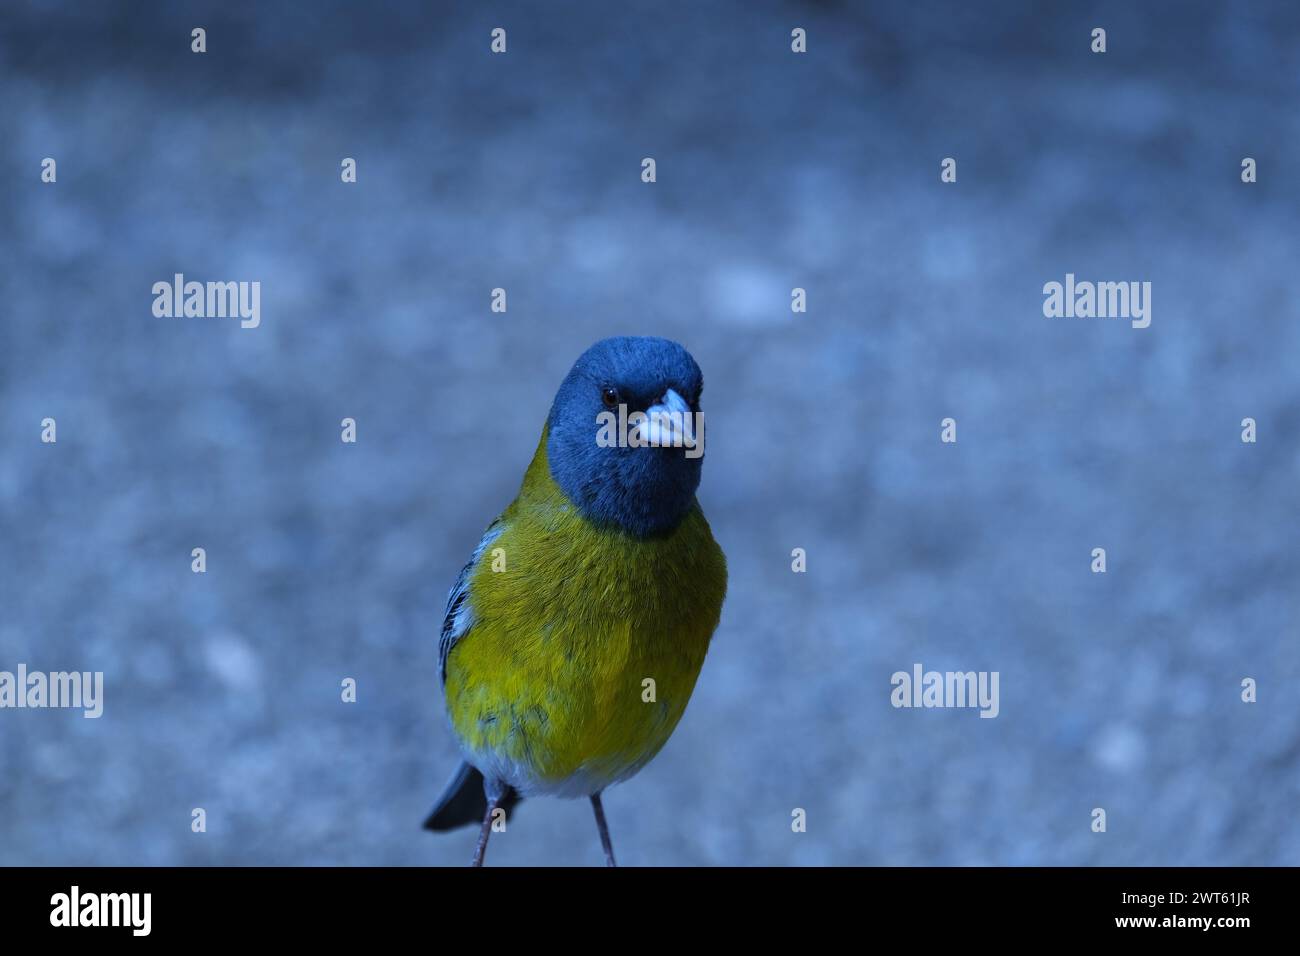 Nahaufnahme eines bunten blauen und gelben Vogels Stockfoto